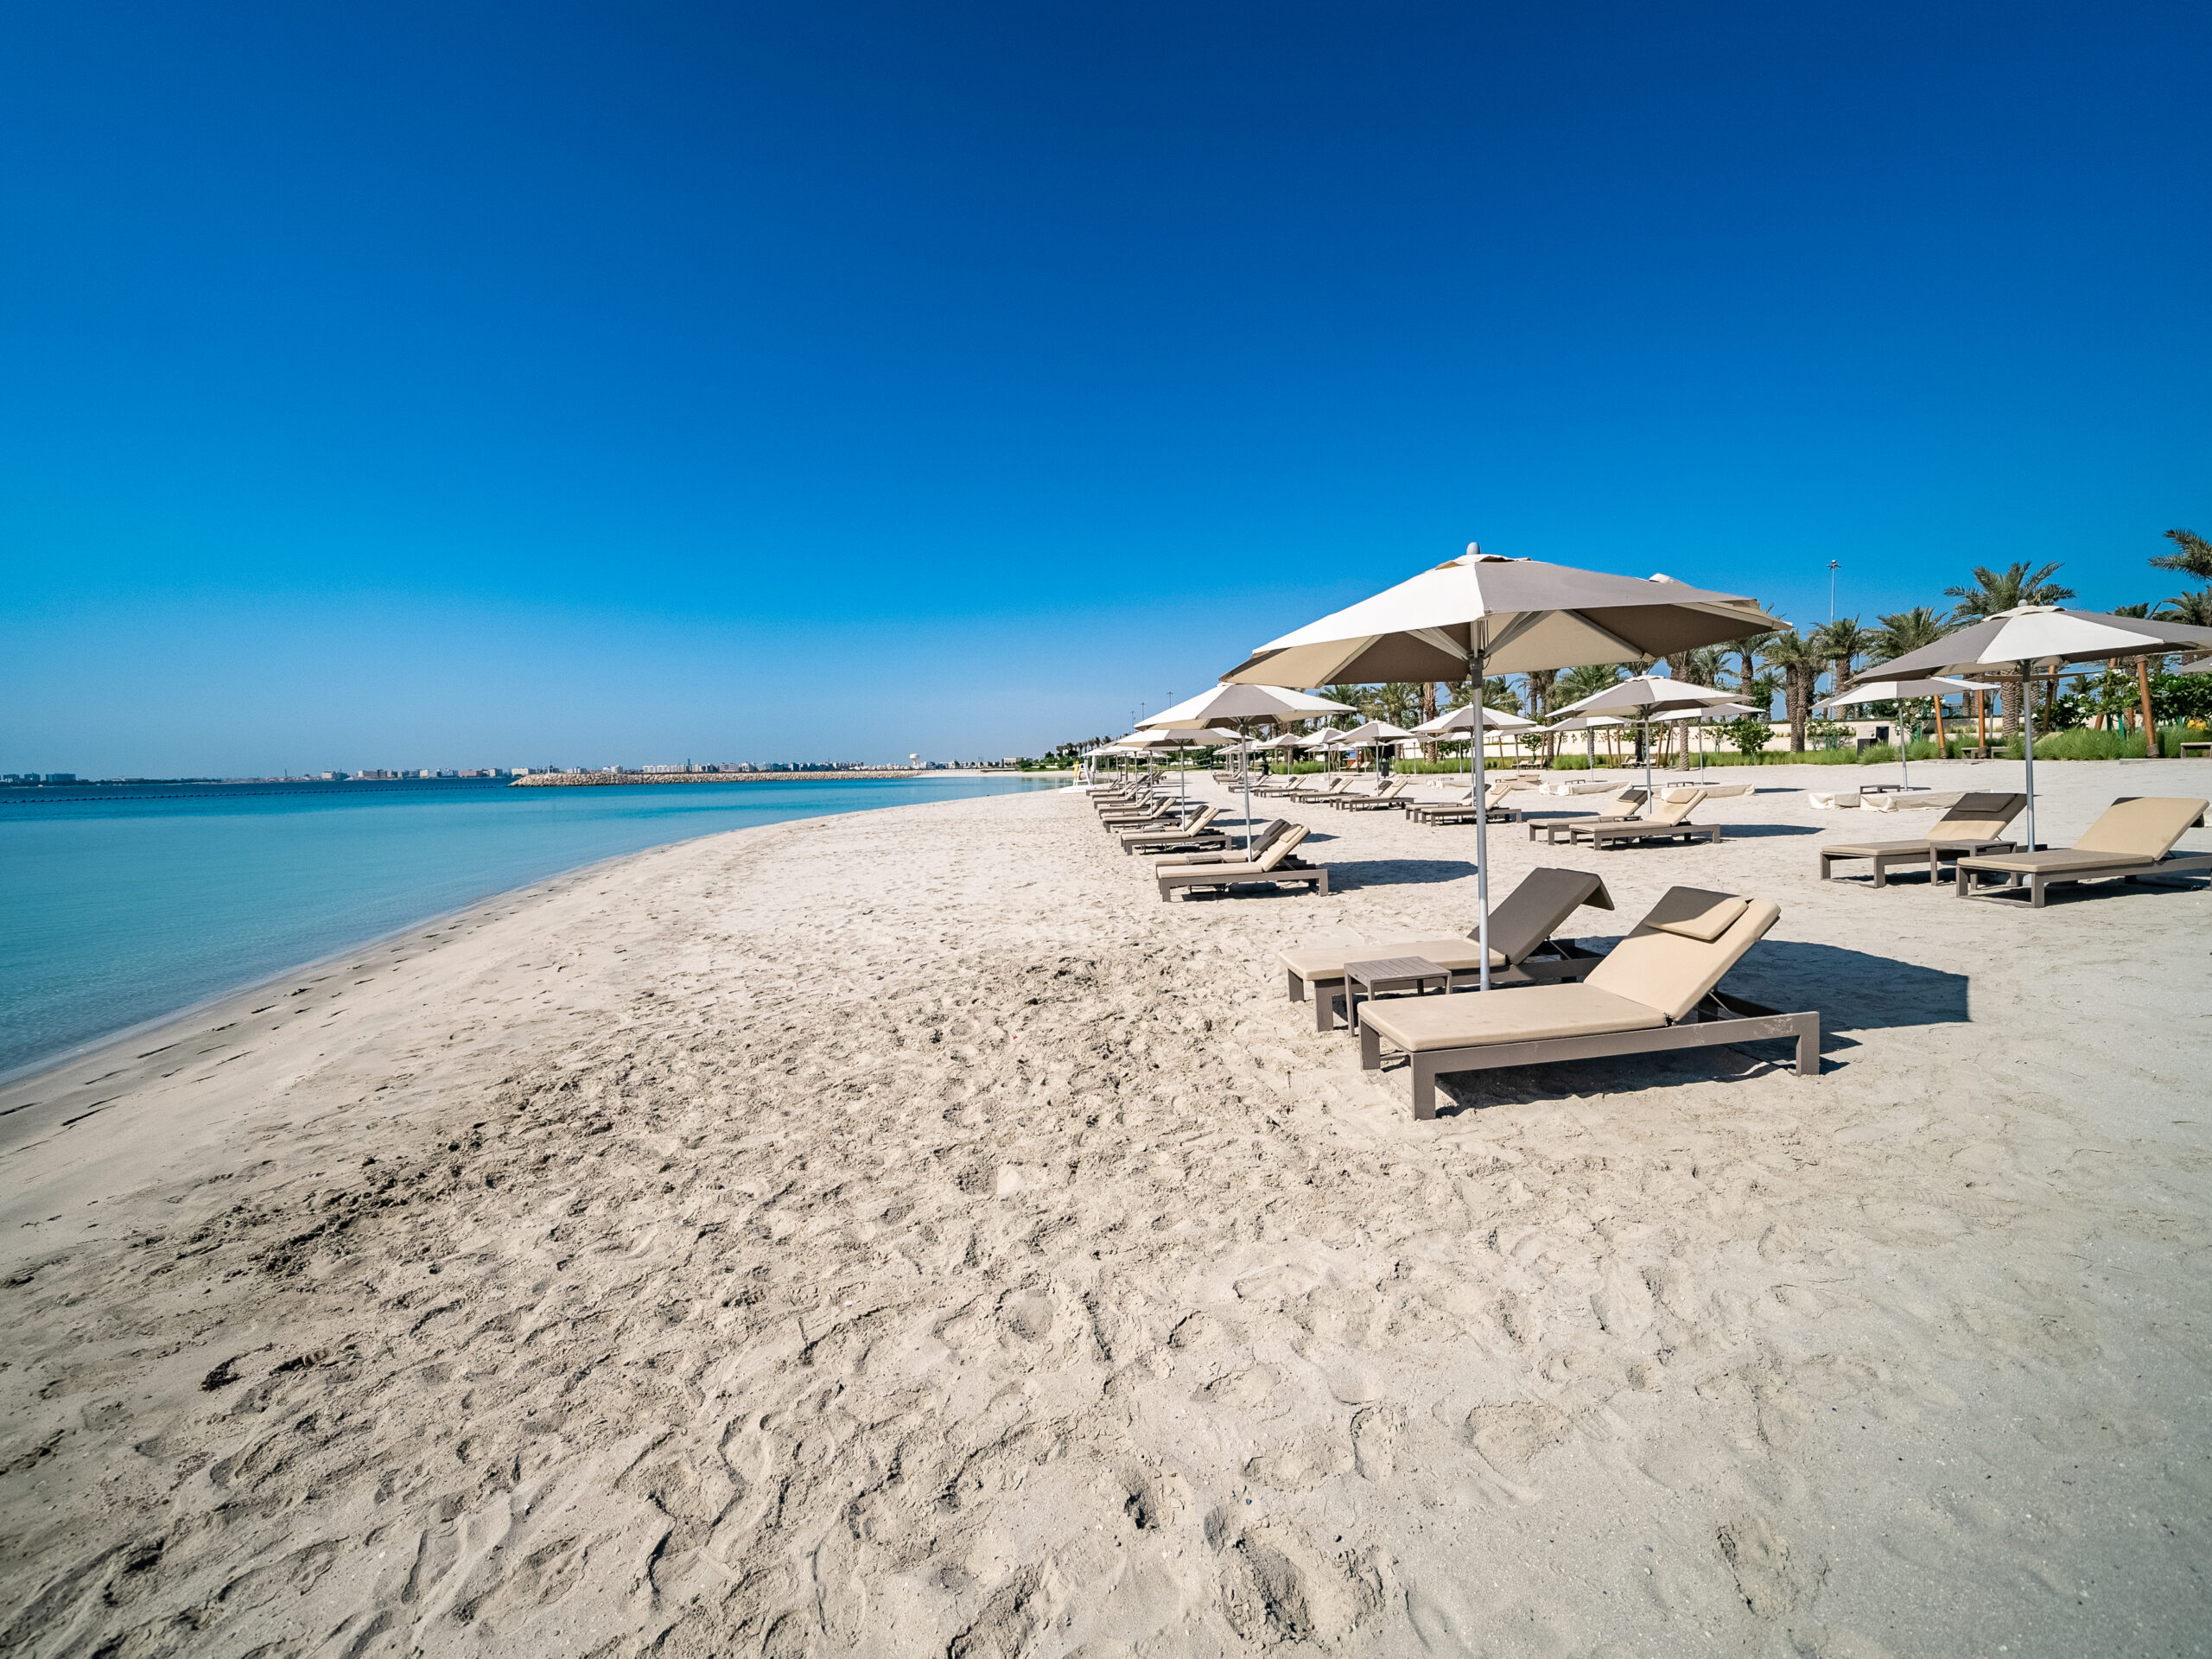 Nádherné hotelové pláže s jemným bielym pieskom, Address Beach Resort Bahrain 5*, Bahrajn, dovolenka s CK Hydrotour